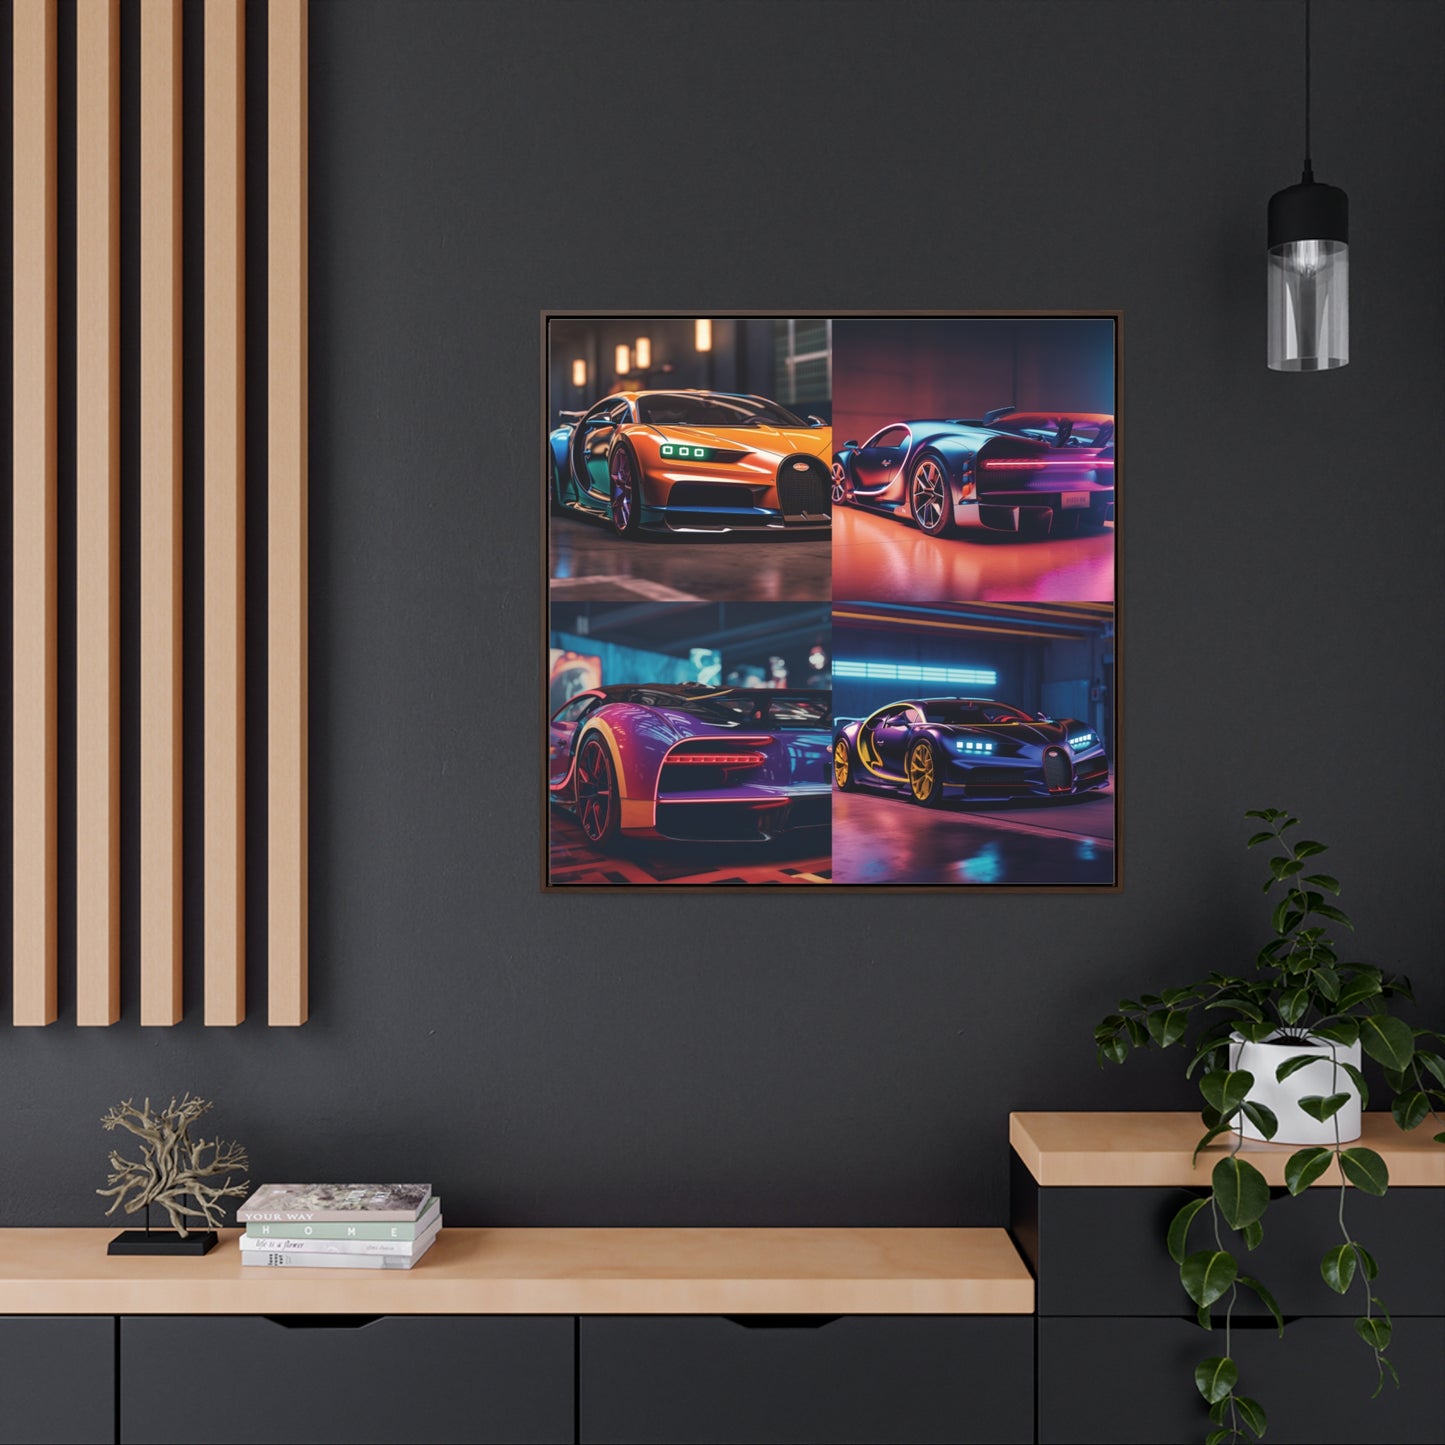 Gallery Canvas Wraps, Square Frame Hyper Bugatti Neon Chiron 5